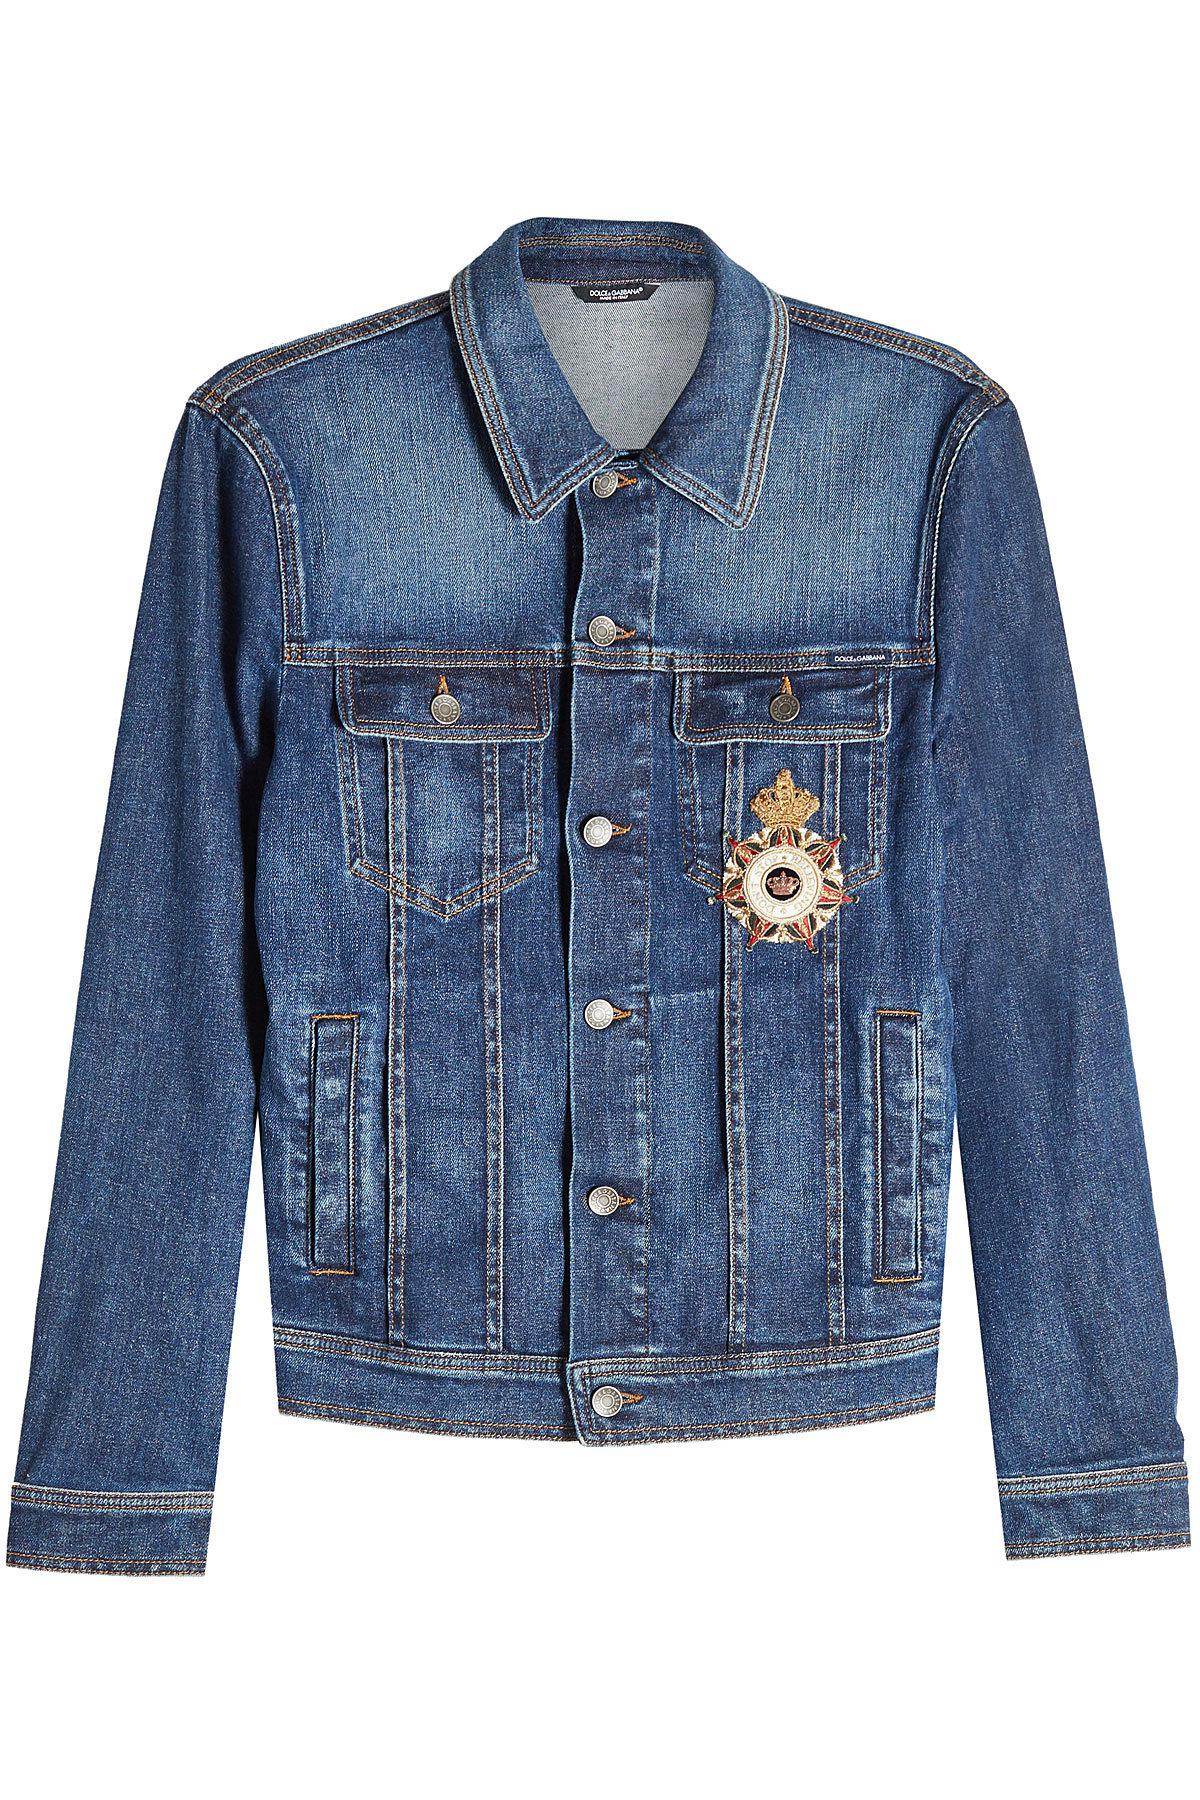 Lyst - Dolce & Gabbana Denim Jacket With Embellished Badge in Blue for Men